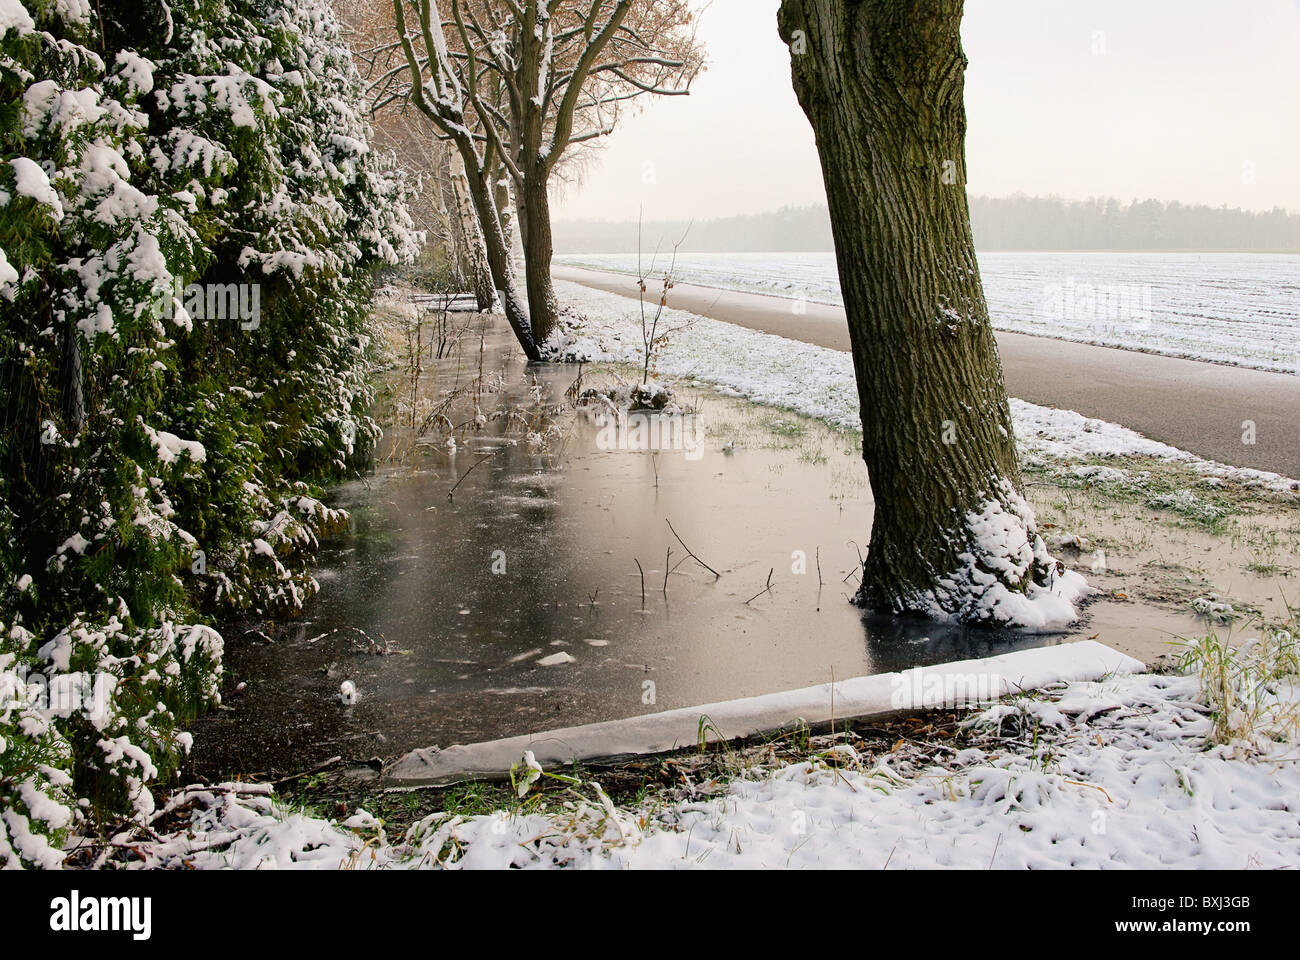 Wassergraben Im Winter - Wasser Graben im Winter 04 Stockfoto